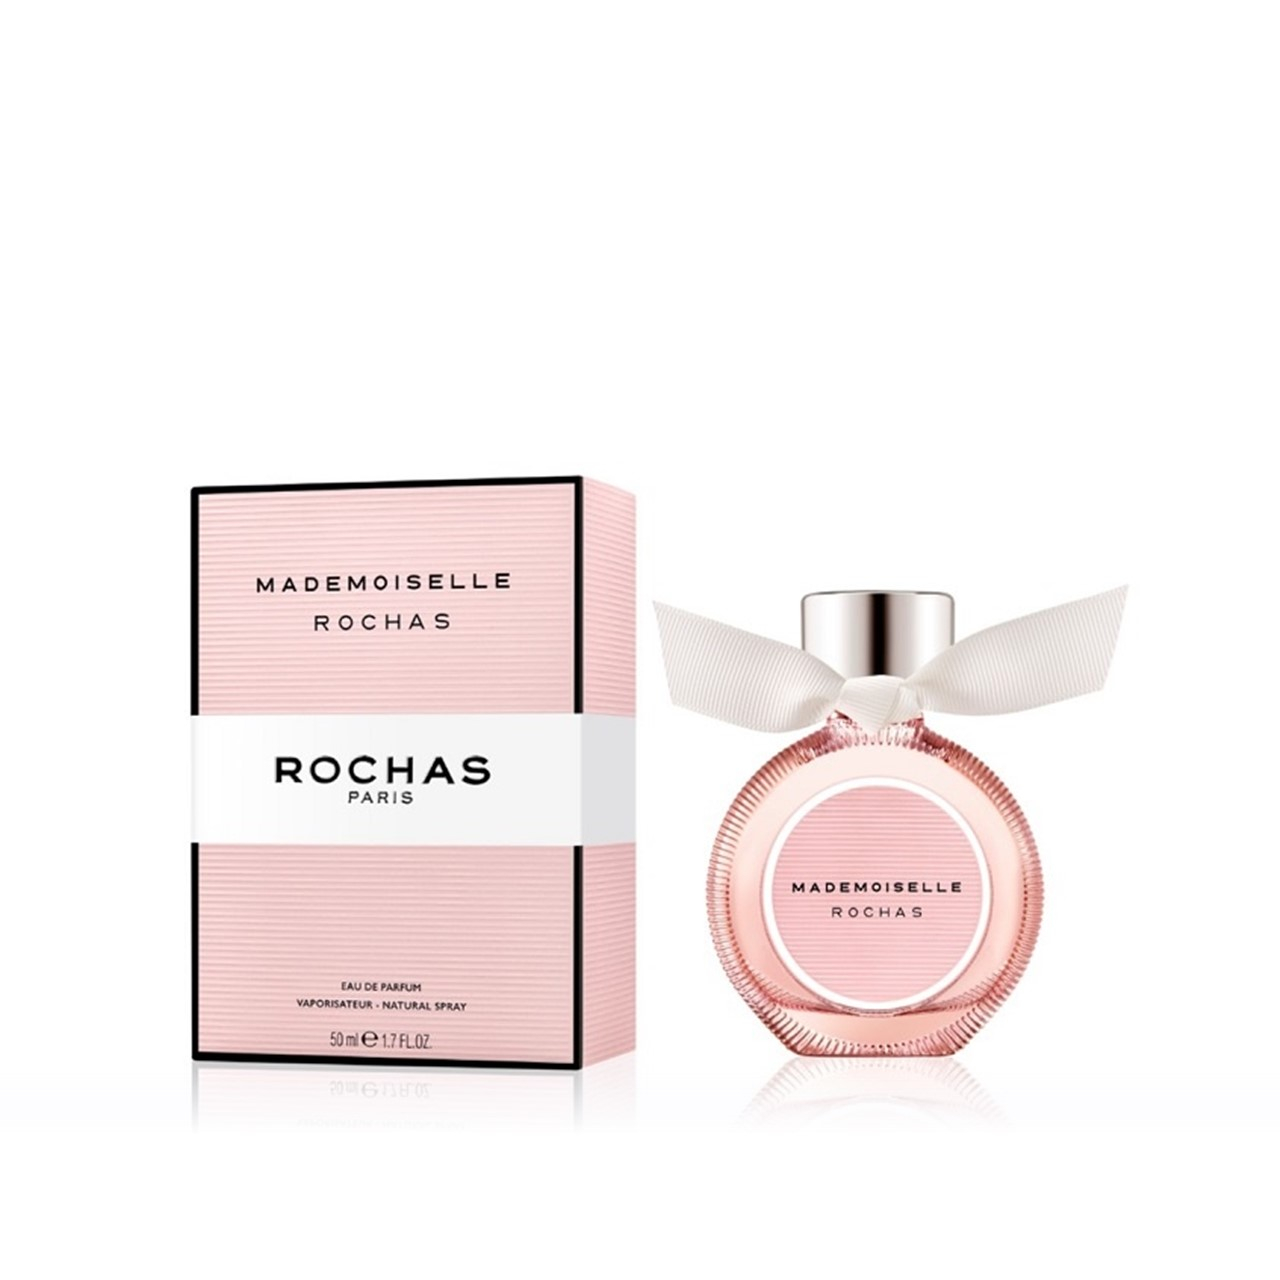 Rochas Mademoiselle Rochas Eau de Parfum 50ml